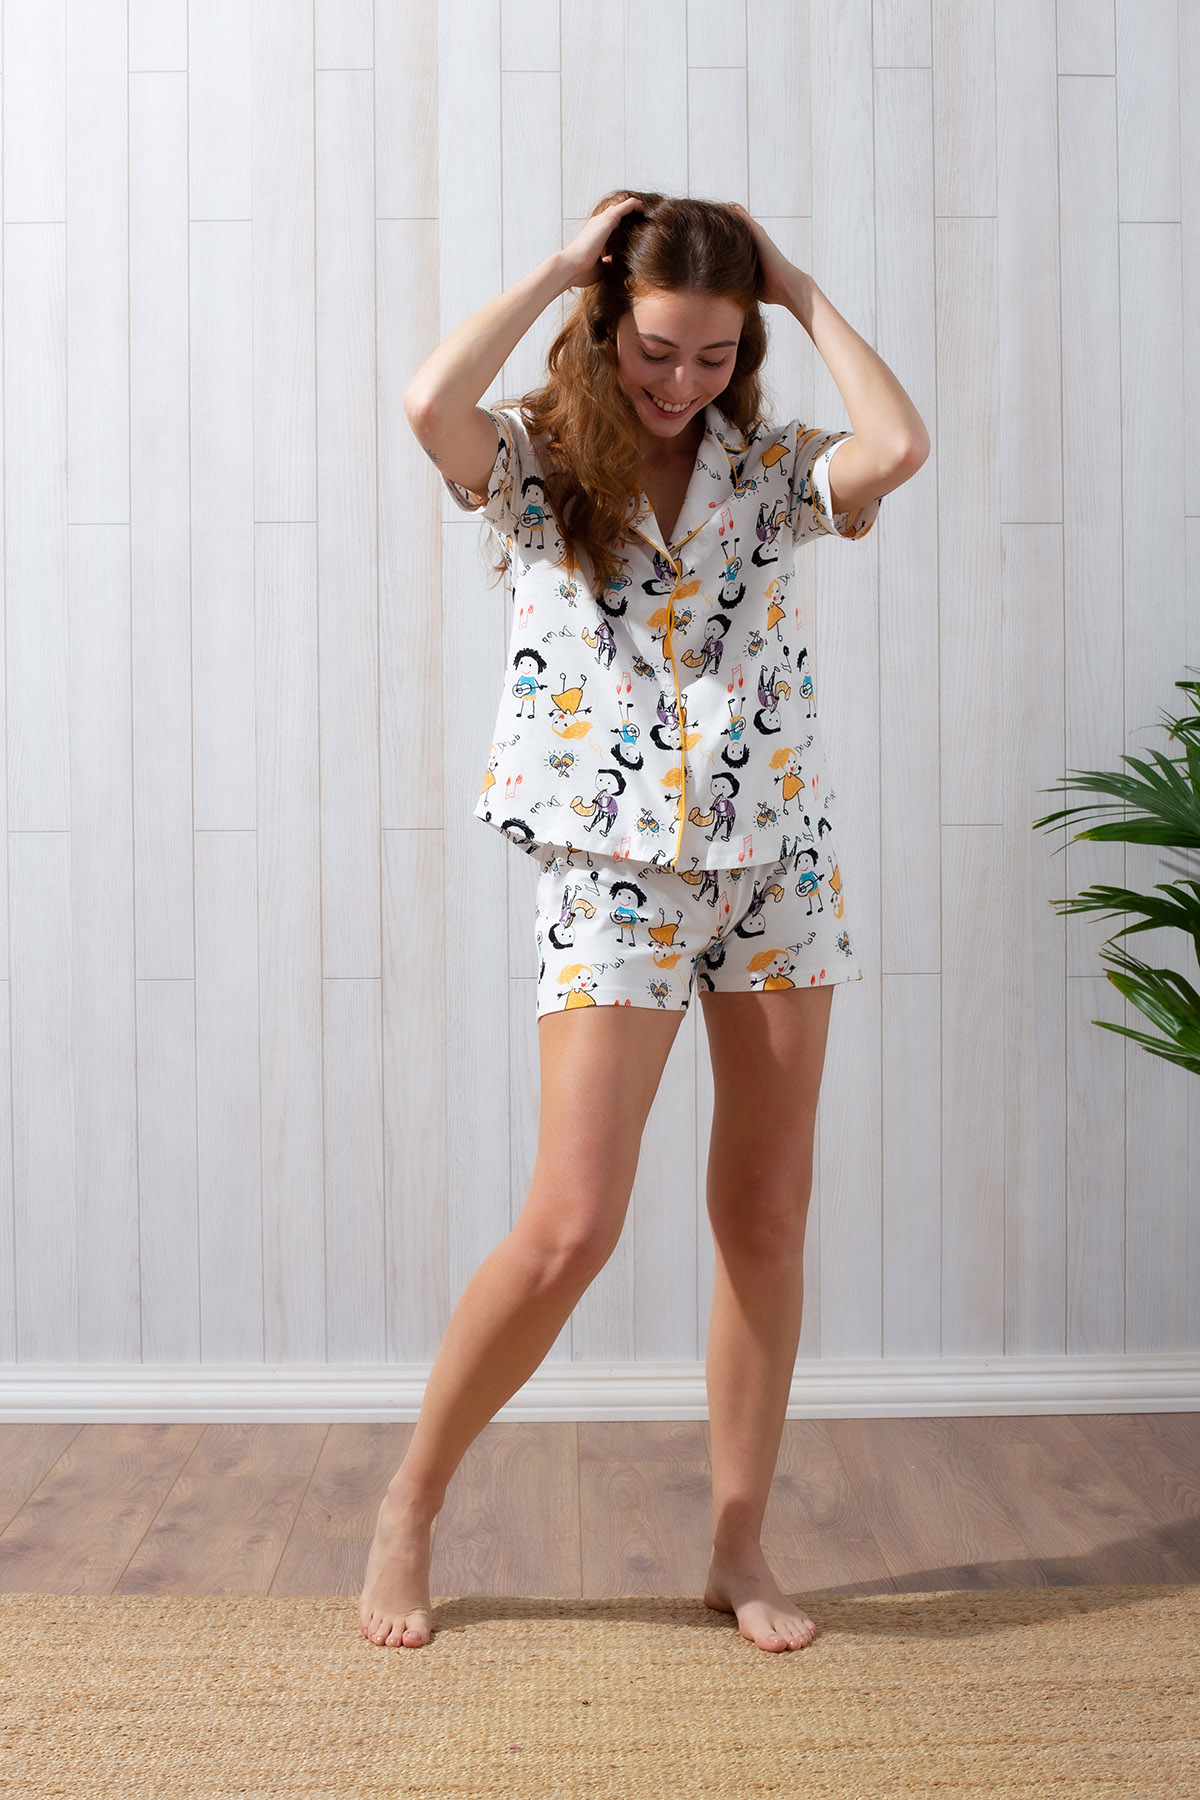 Kadın Şortlu Pijama Takımı